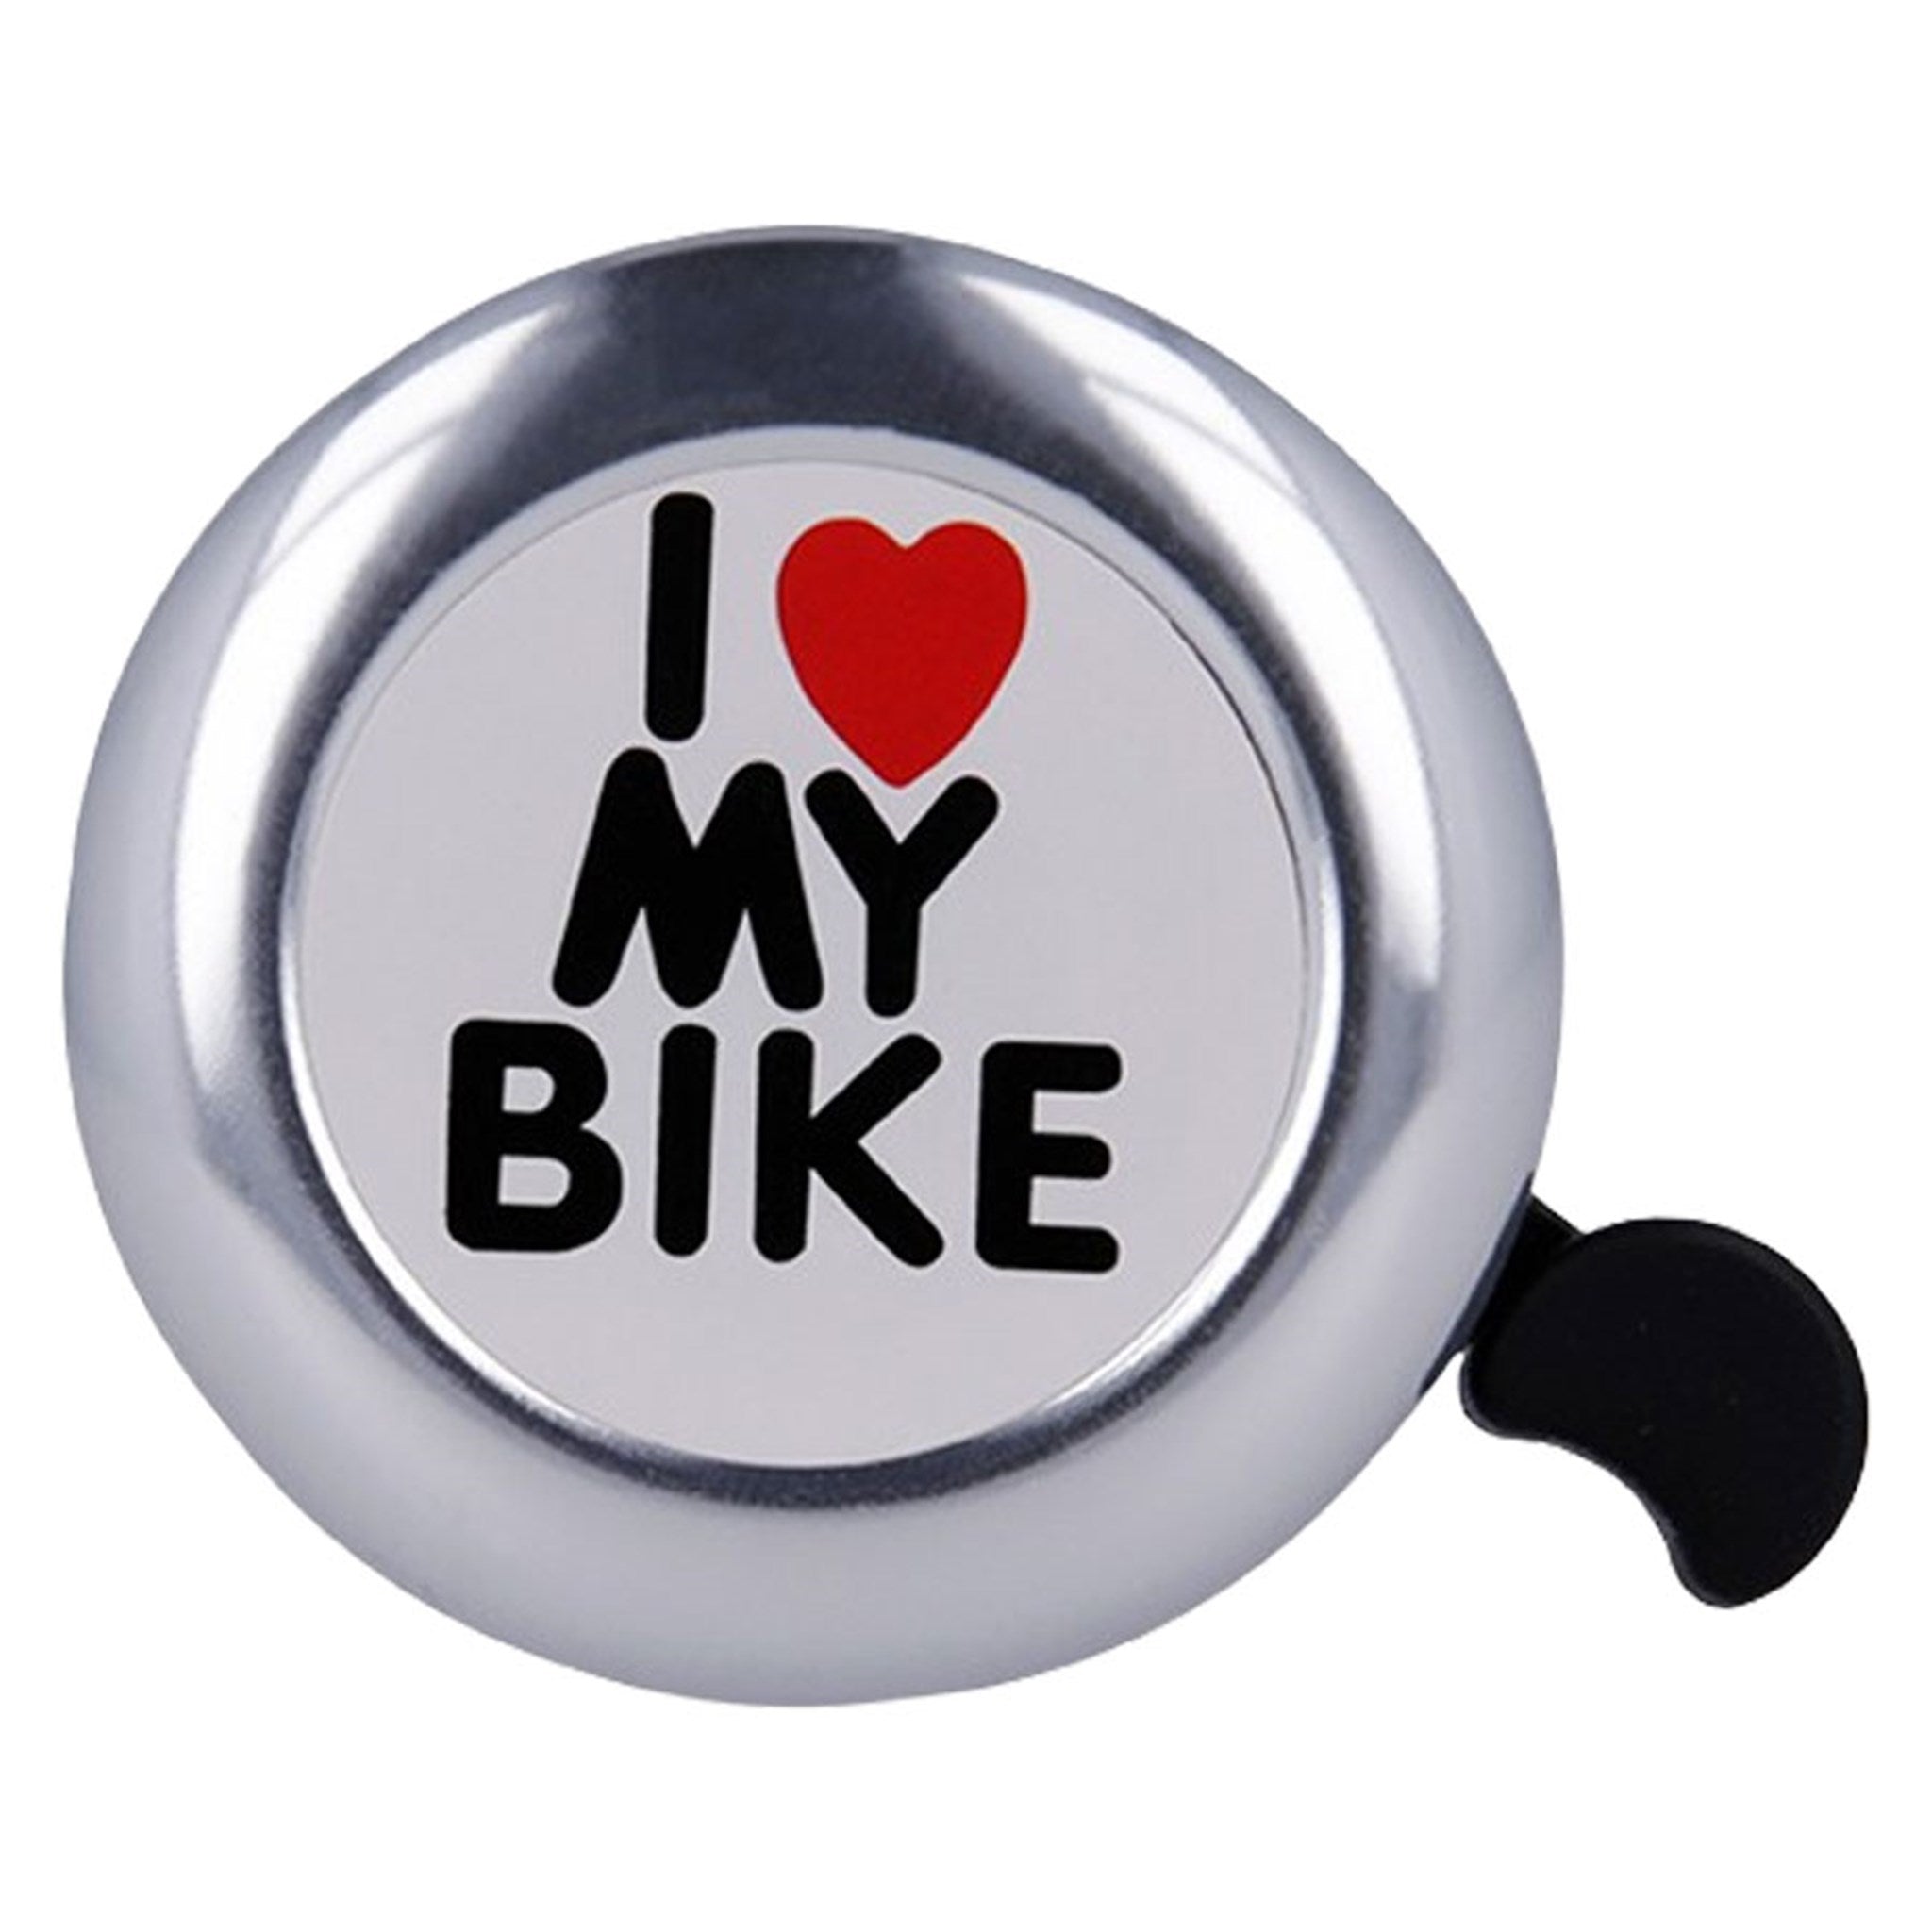 BIKE00025 Forever I Love My Bike Ringeklokken Til Cykel 01 1